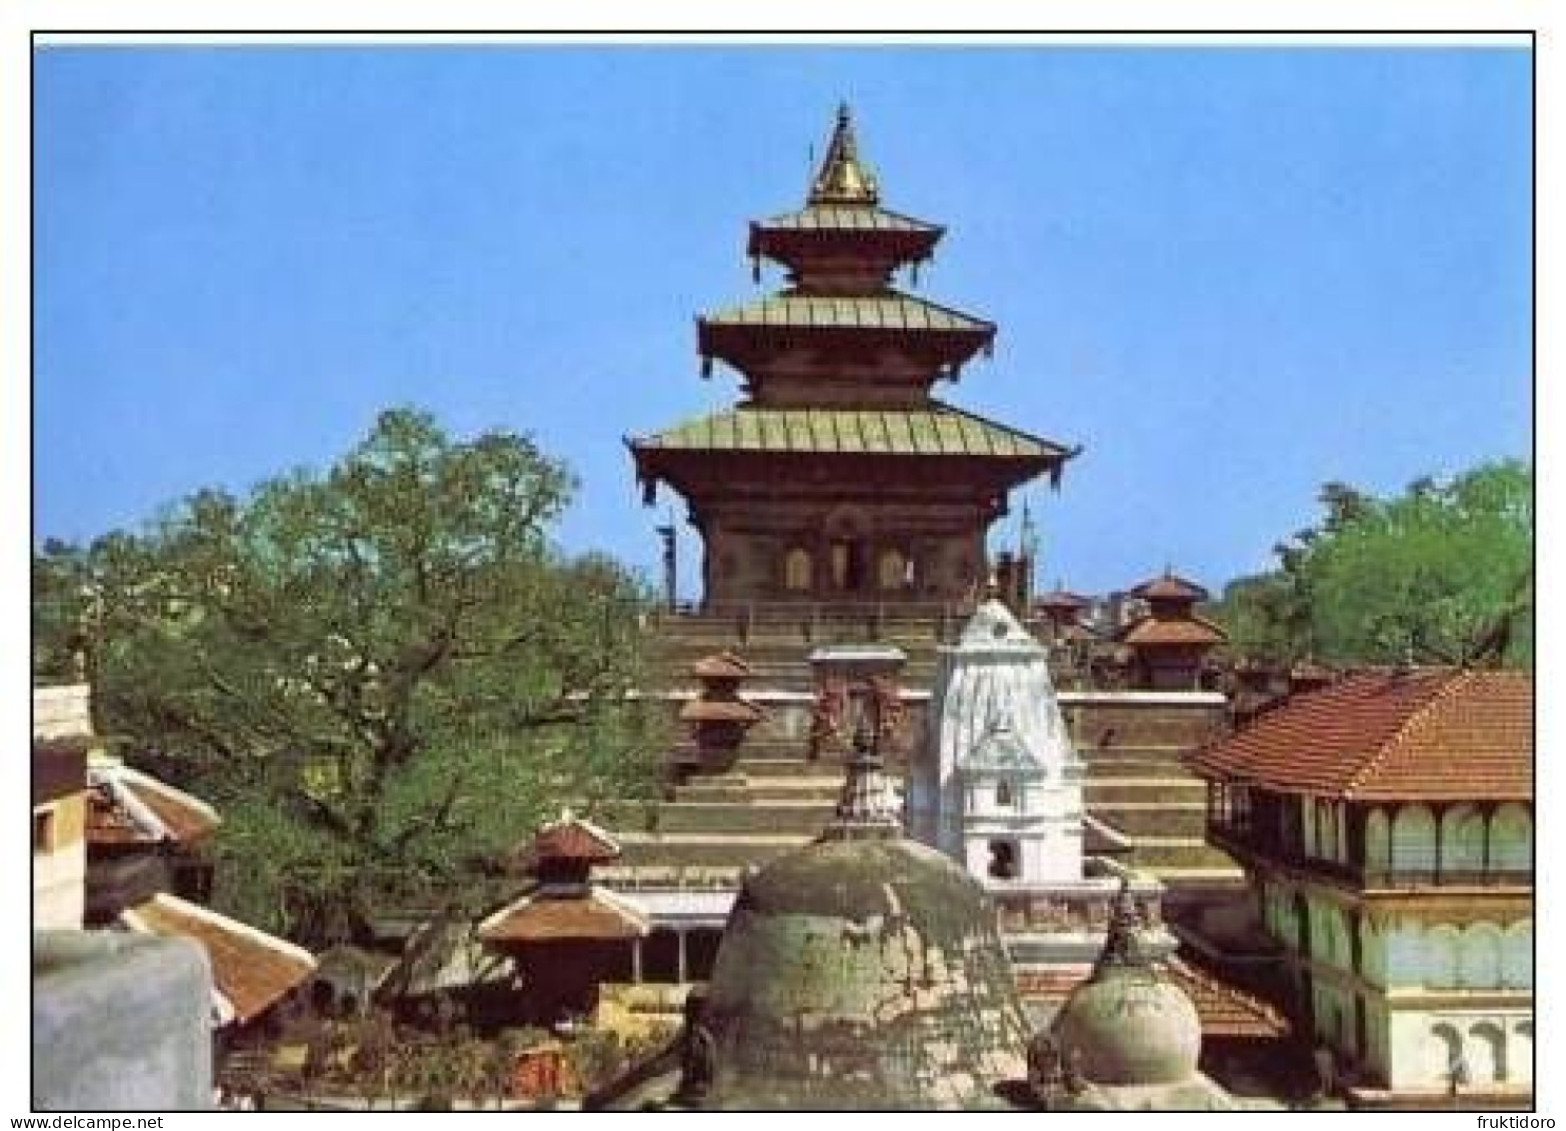 AKNP Nepal Postcards Kathmandu Buddhist Stupa - Taleju Temple - Nepal